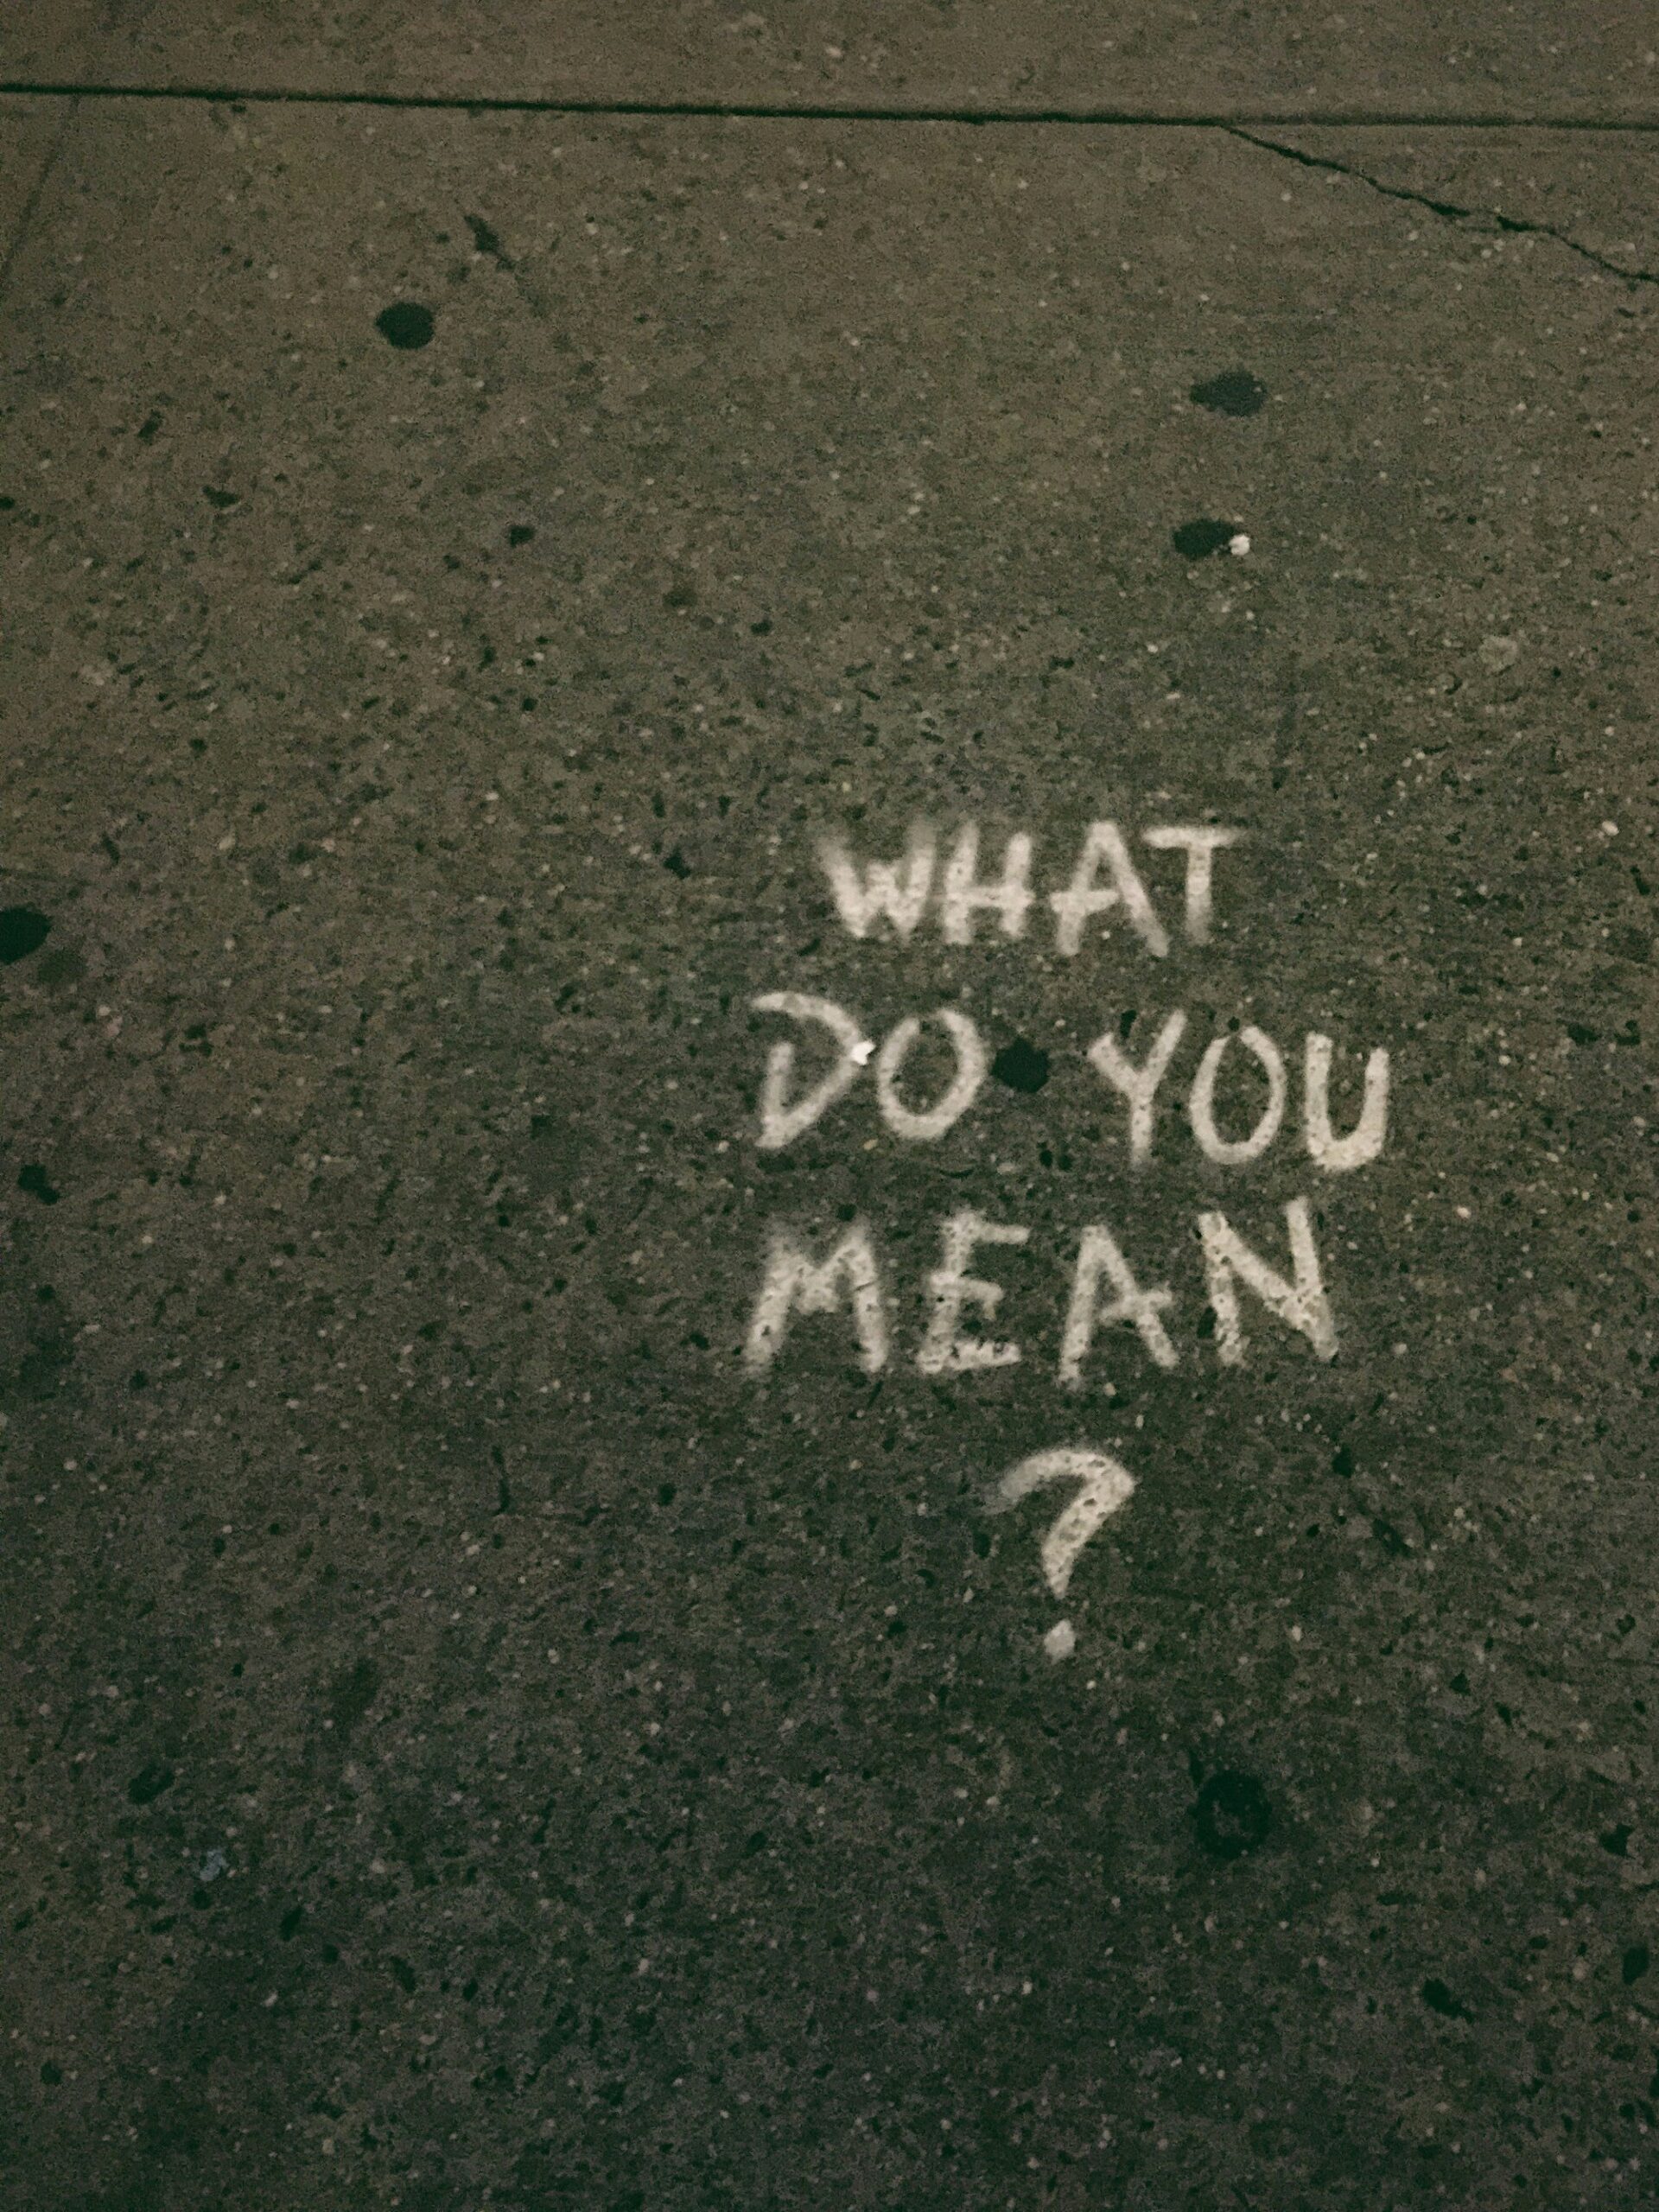 Teksti "What dou you mean" kirjoitettu valkoisella maahan.